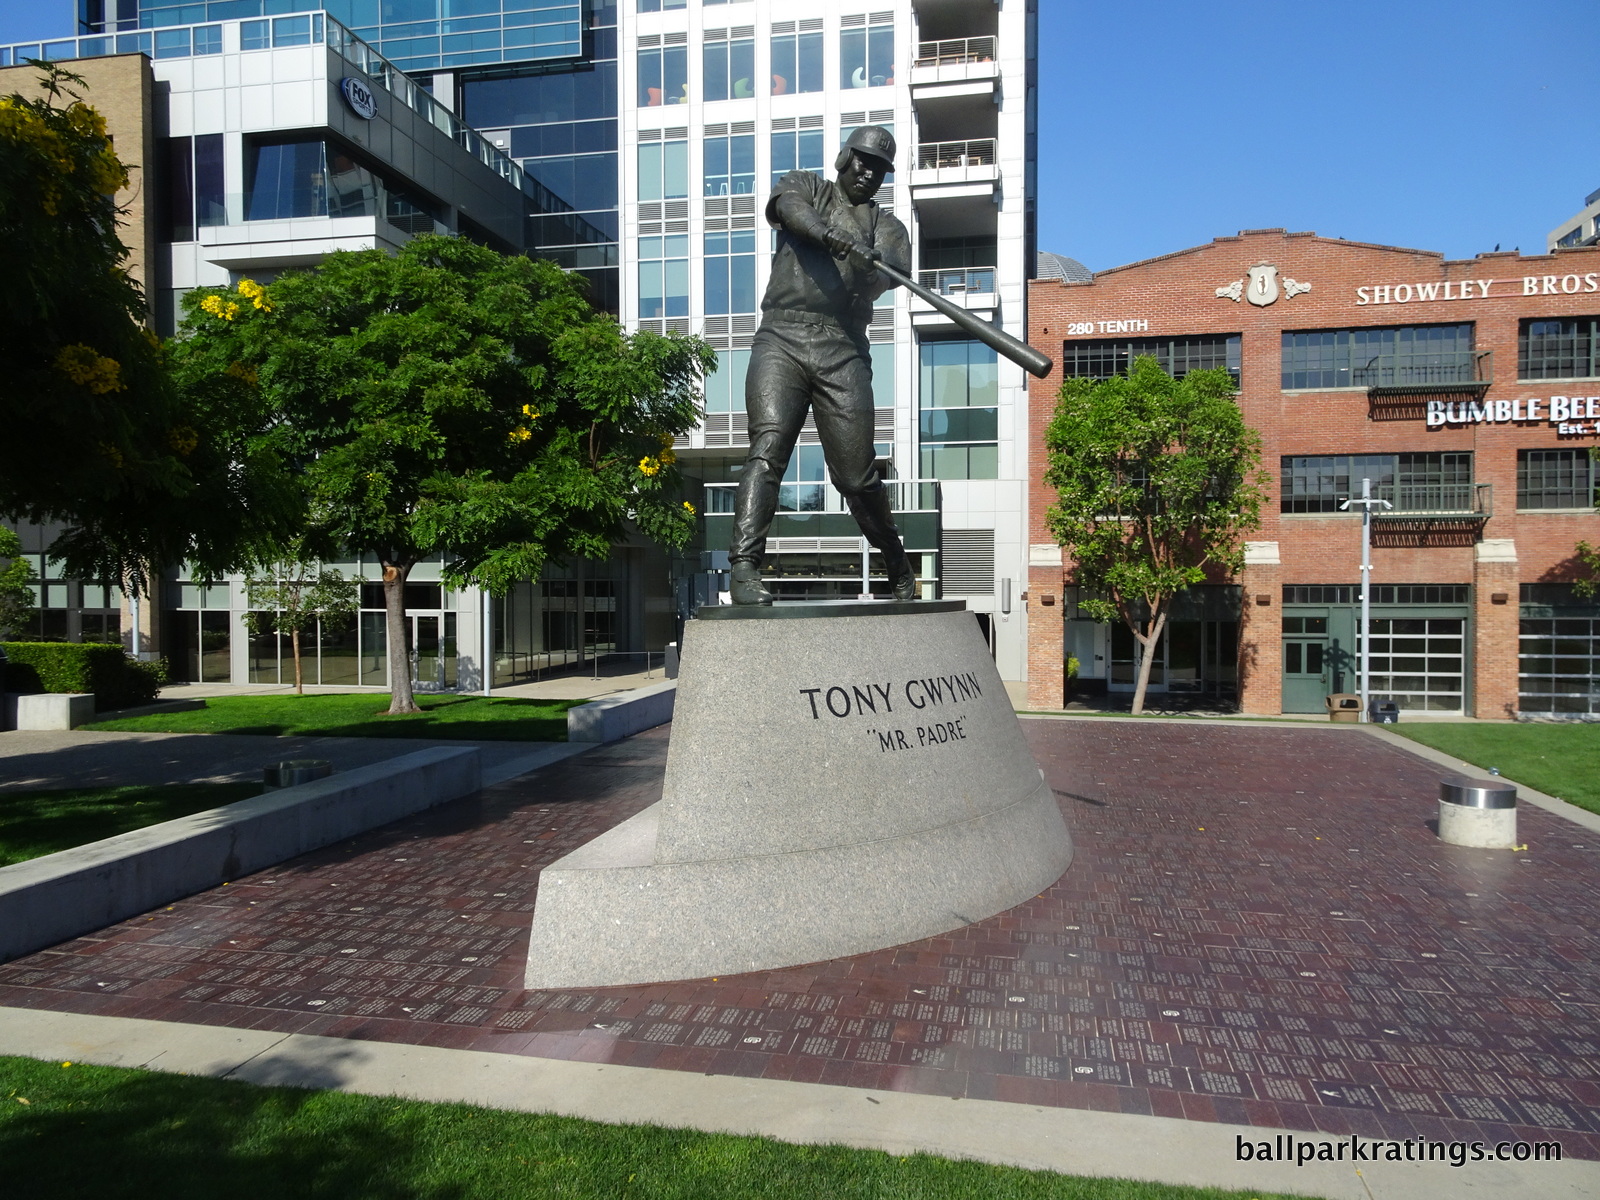 Tony Gwynn "Mr. Padre" statue Petco Park